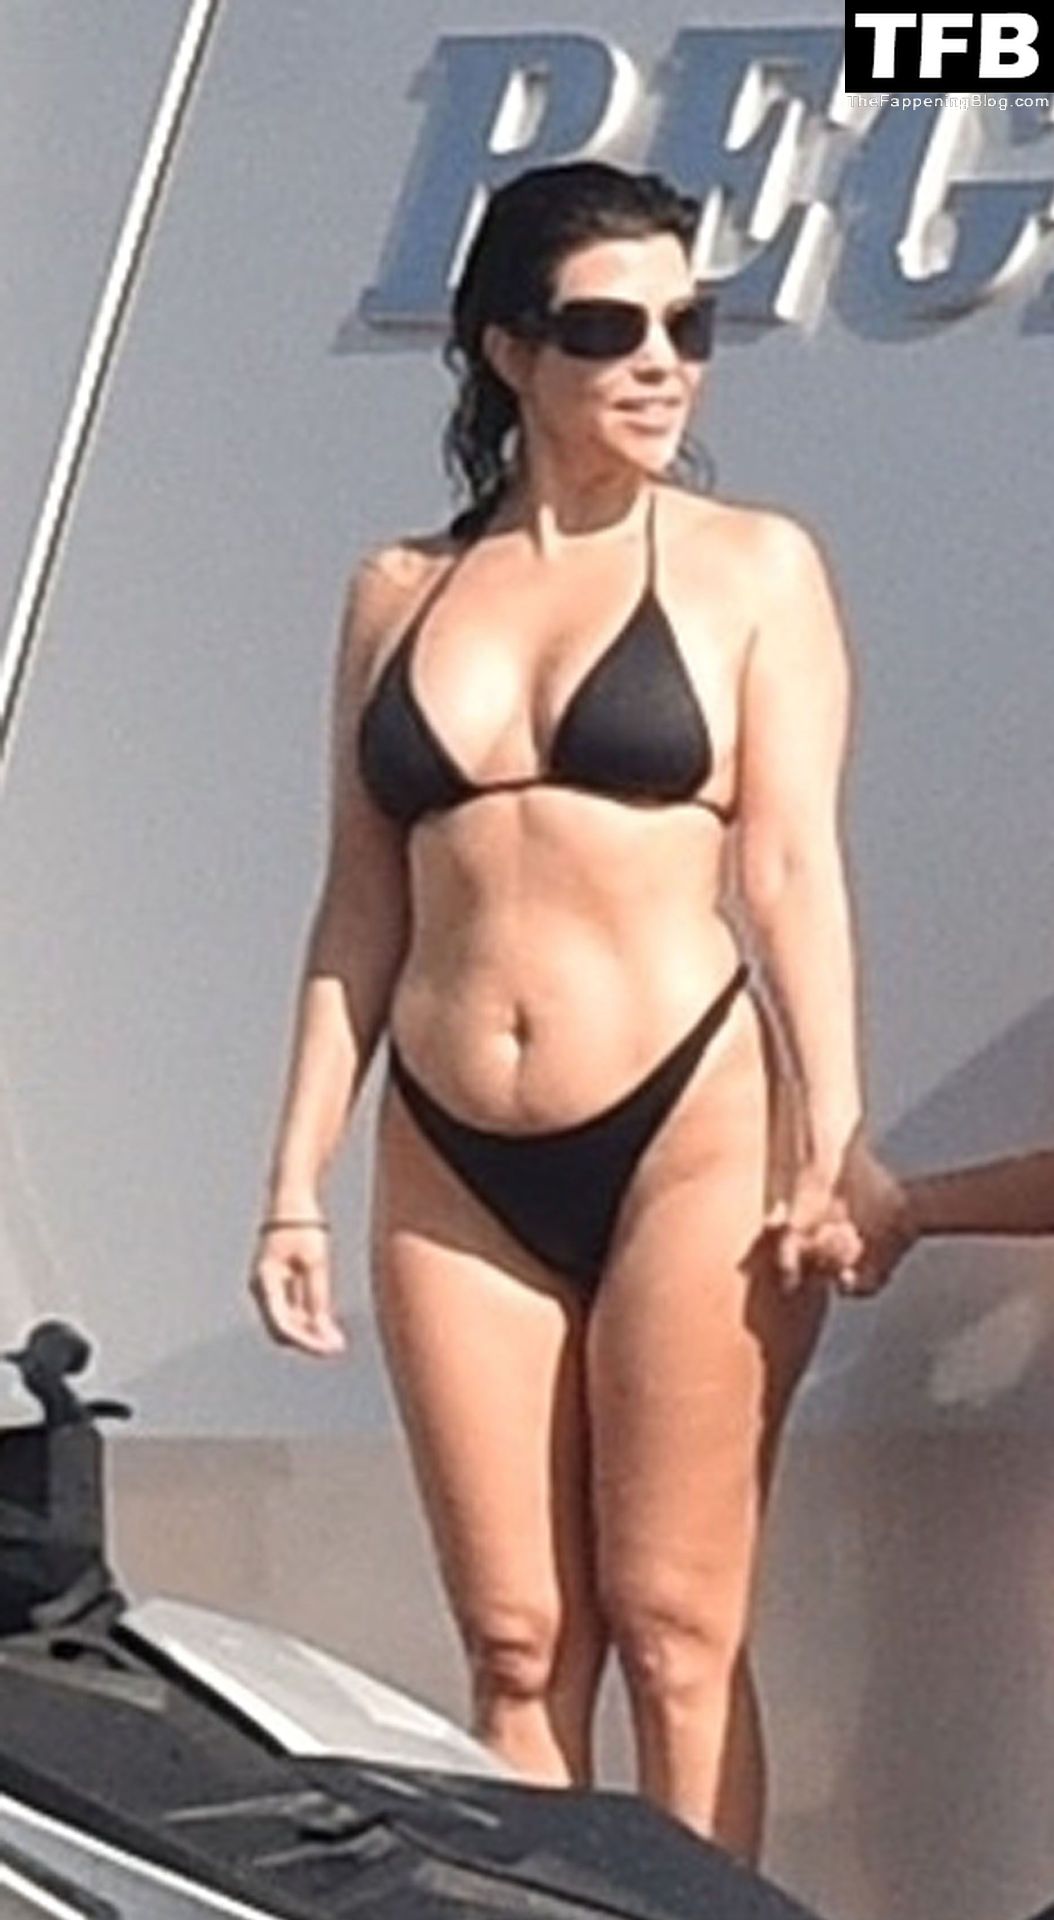 Kourtney-Kardashian-Sexy-The-Fappening-Blog-3-1.jpg